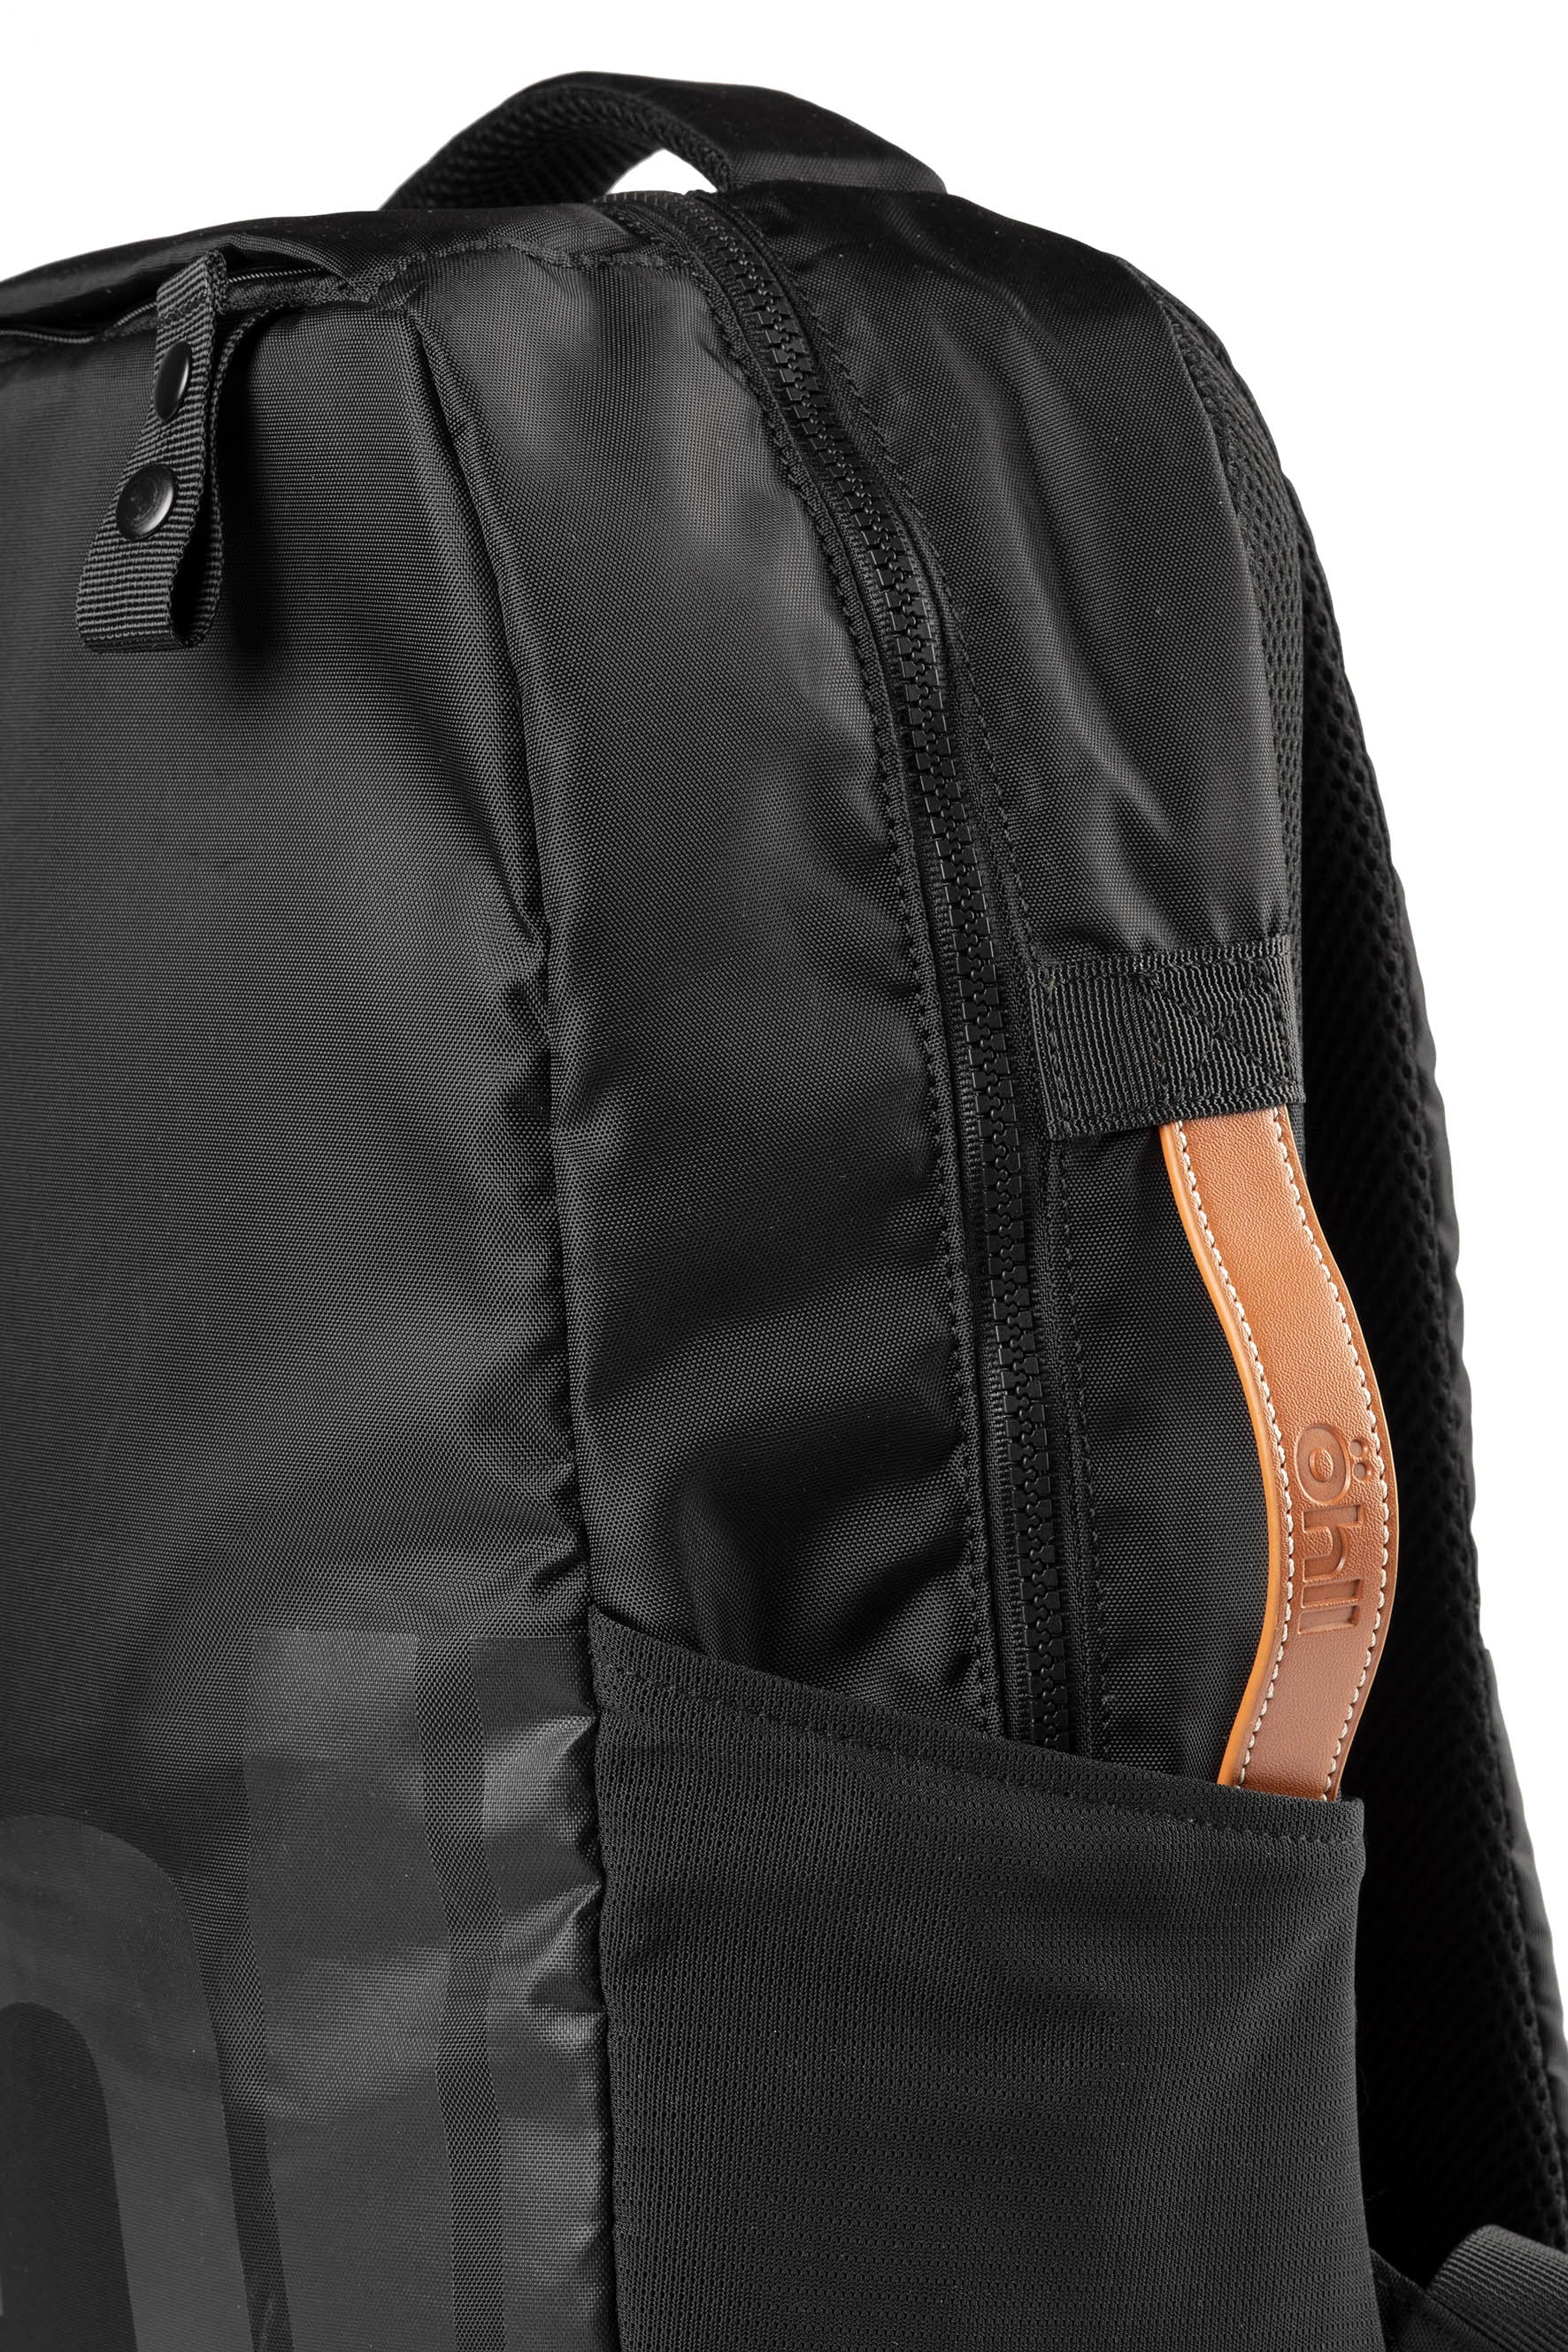 Öhll Backpack Black Leather handle and helmet loop